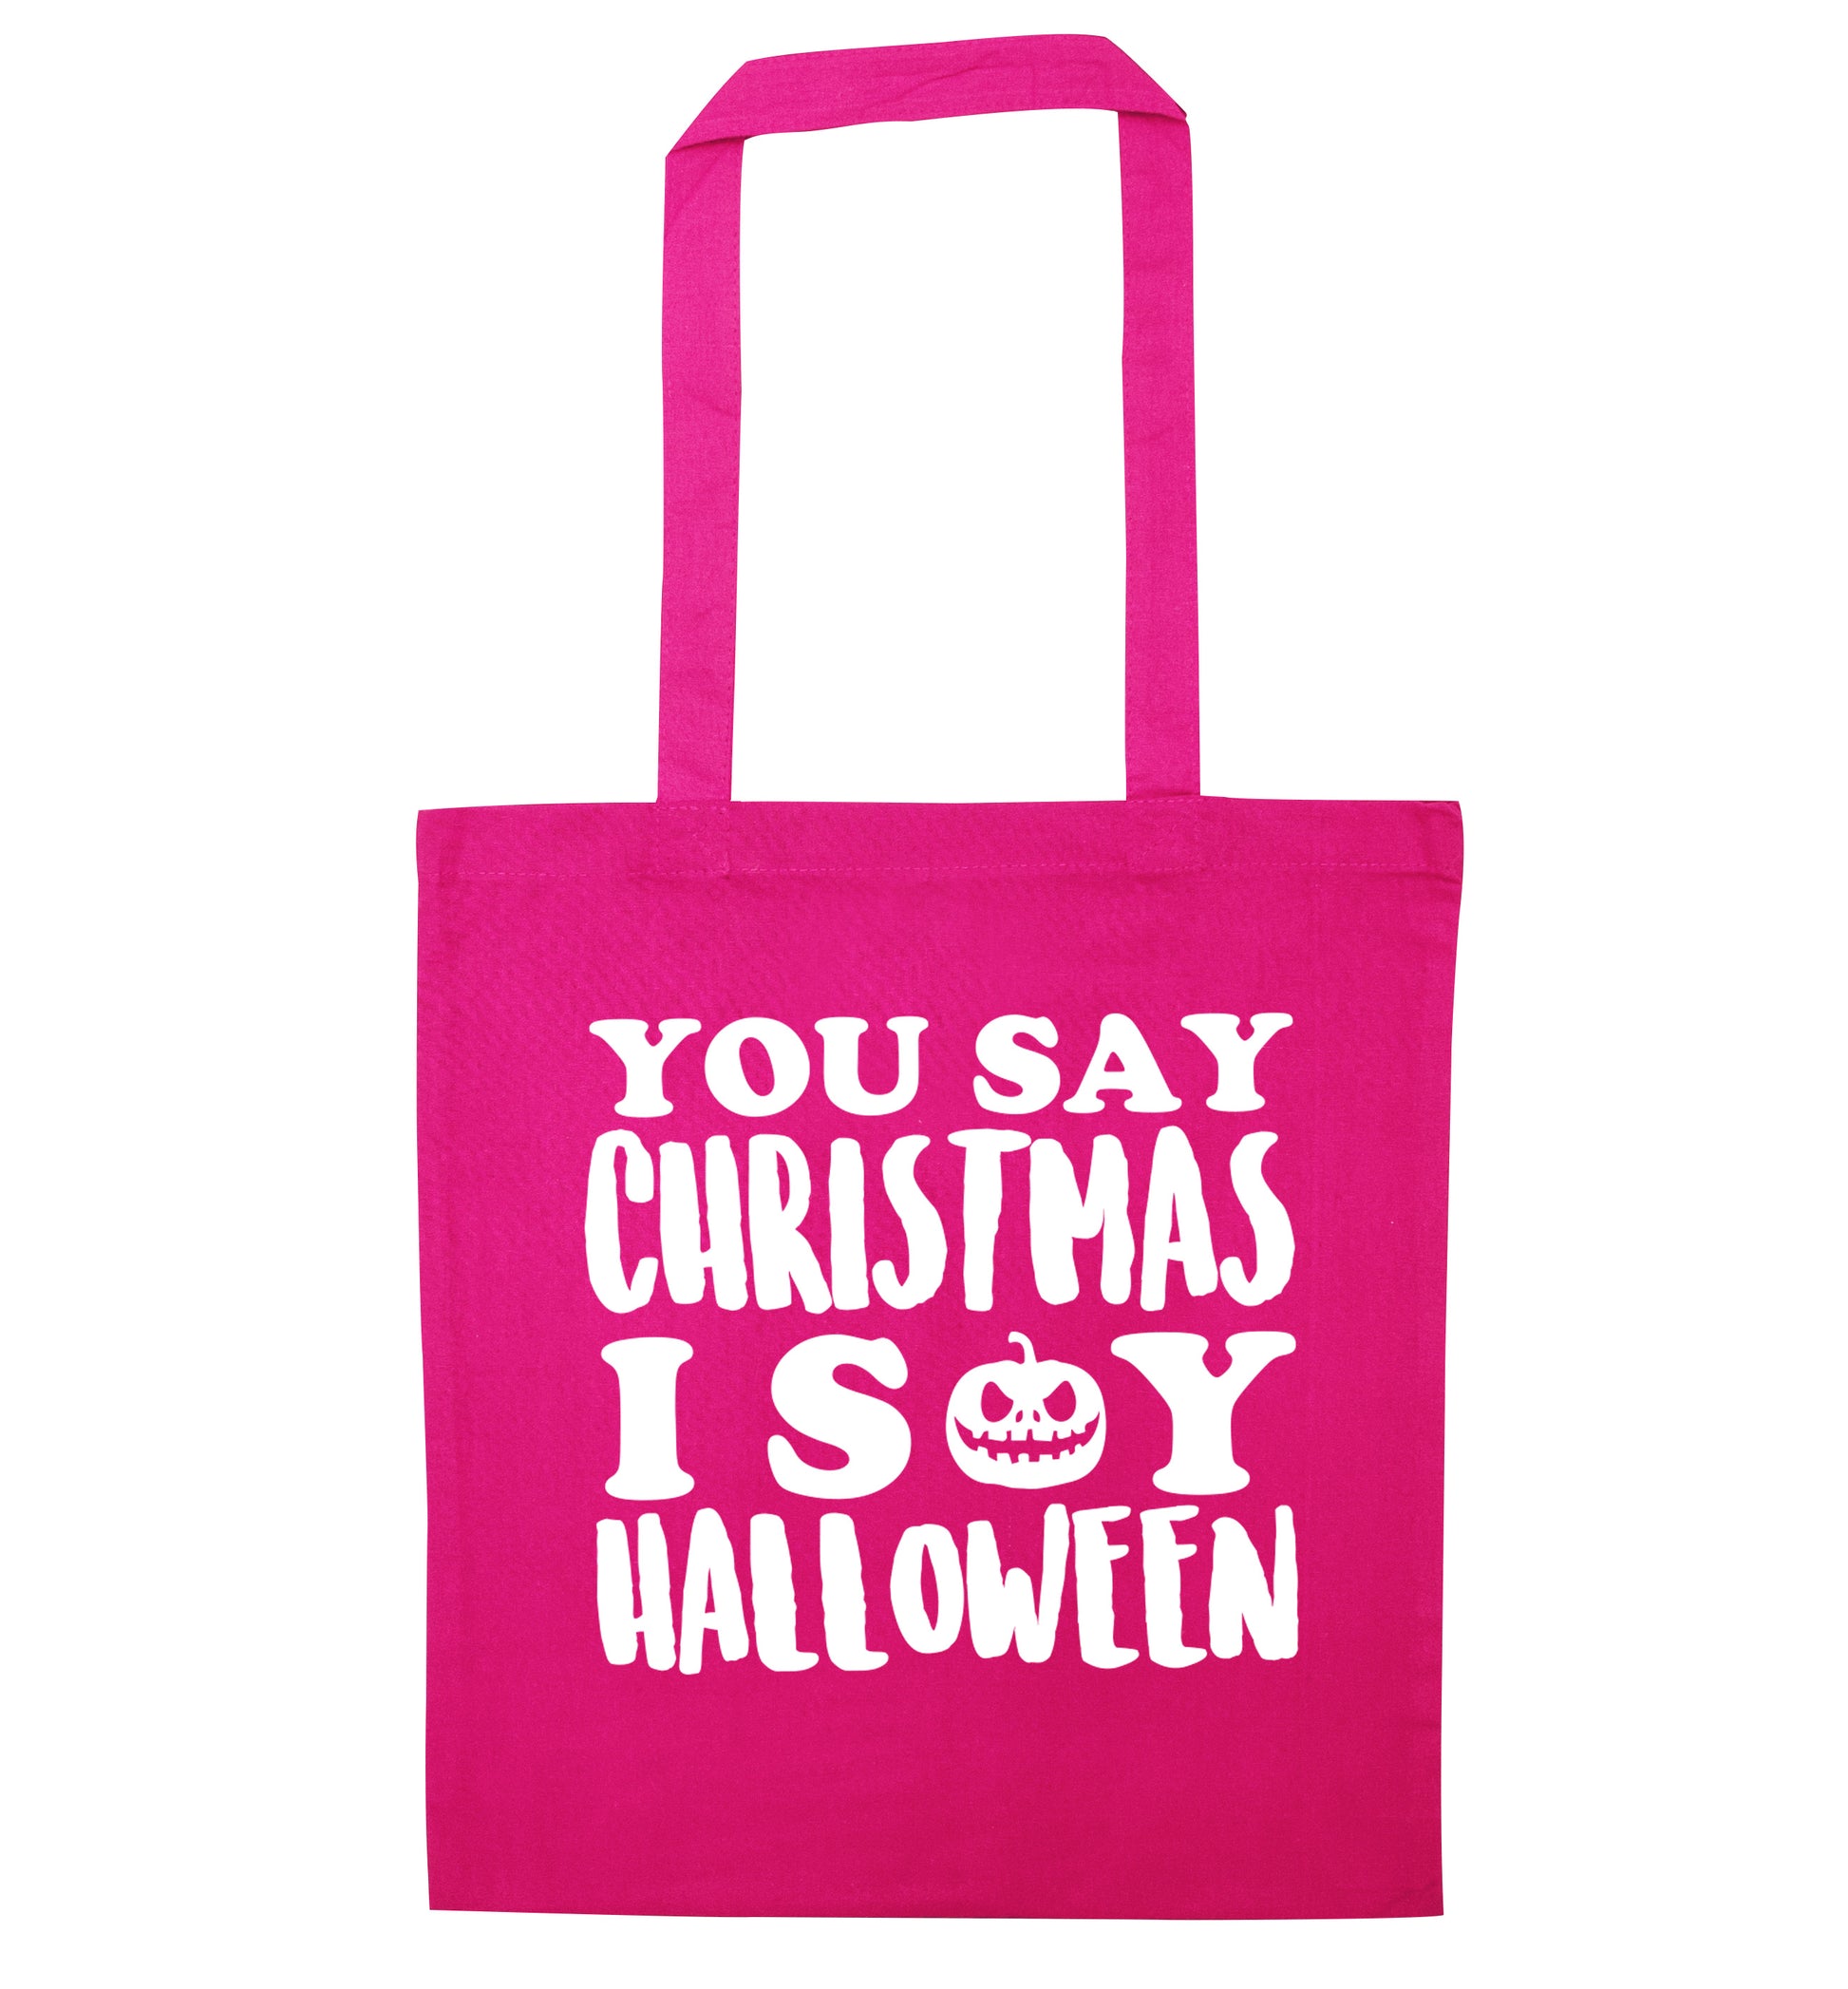 You say christmas I say halloween! pink tote bag